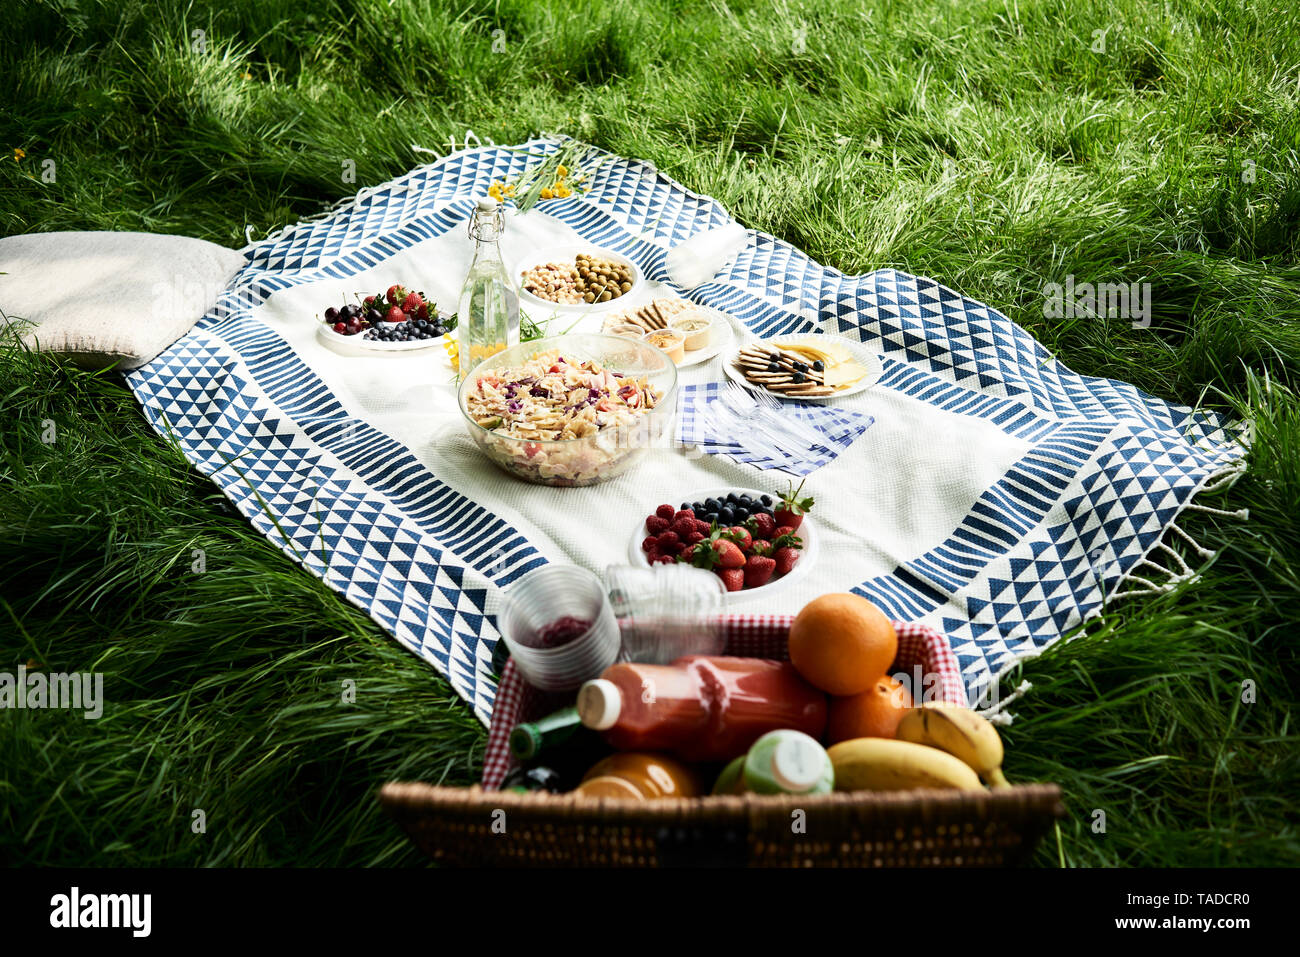 Sani spuntini picnic su un manto in erba Foto Stock